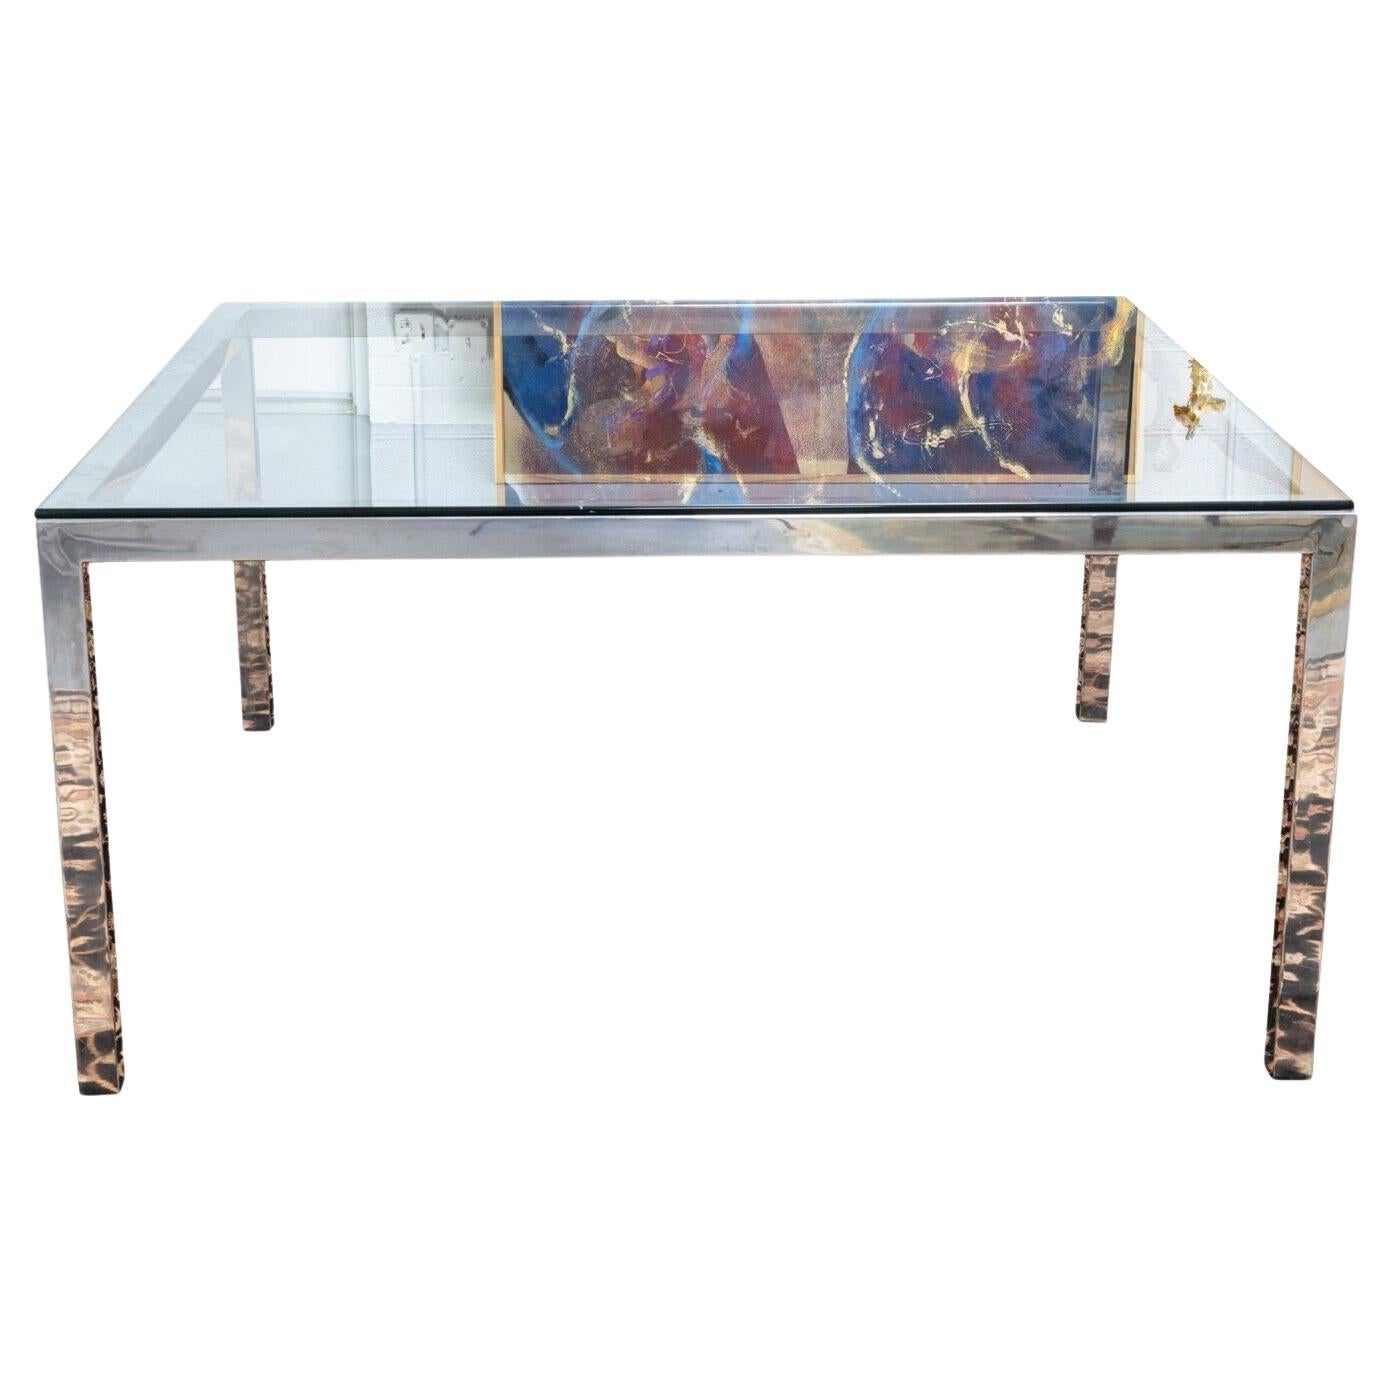 Table de salle à manger contemporaine moderne Milo Baughman, grande table carrée en chrome poli